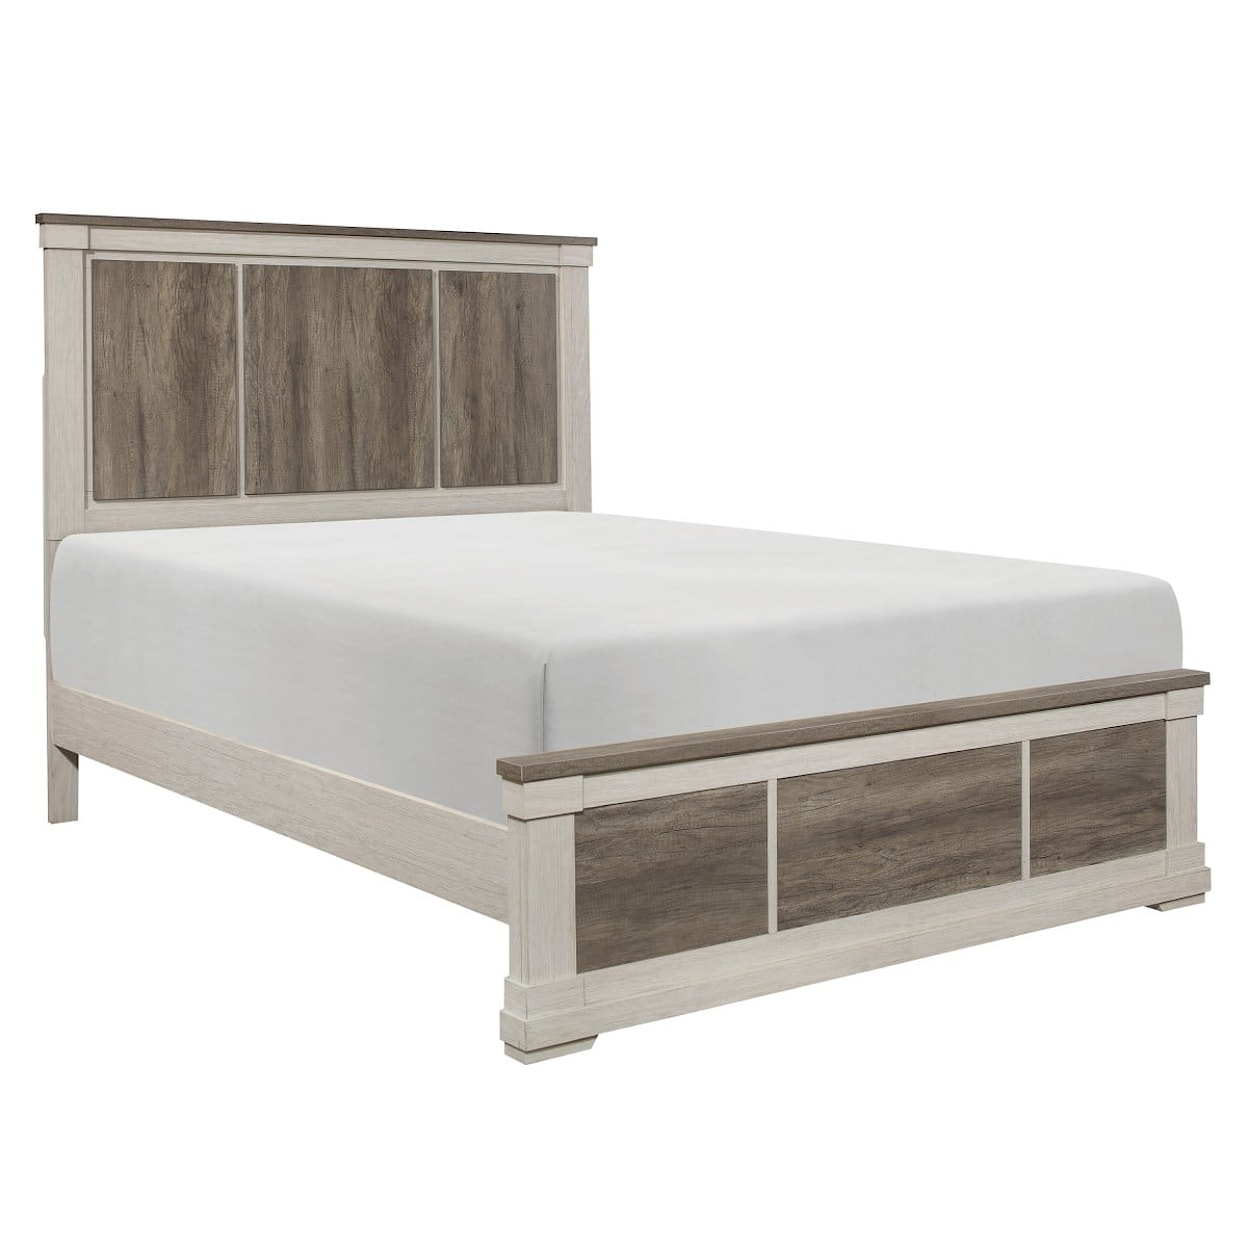 Homelegance Arcadia Queen Bed